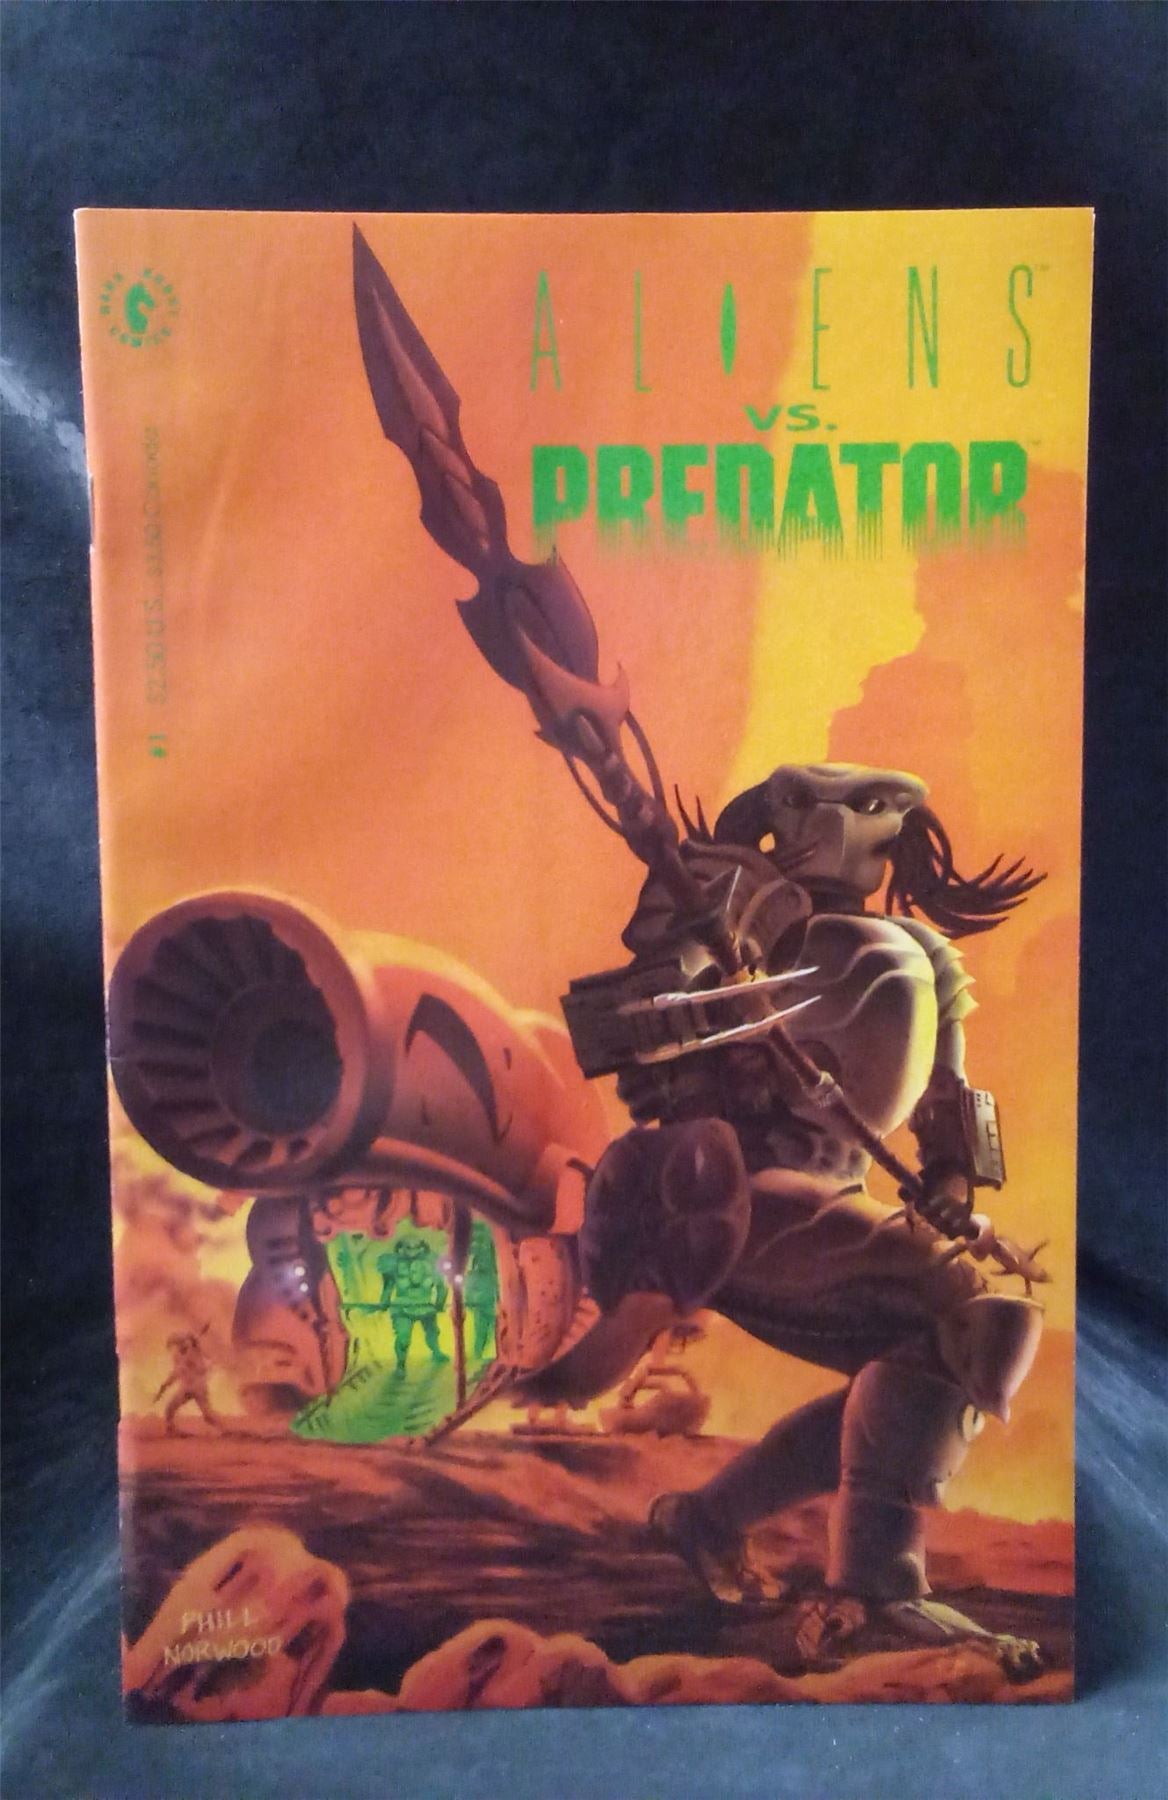 Aliens vs. Predator Volume 1